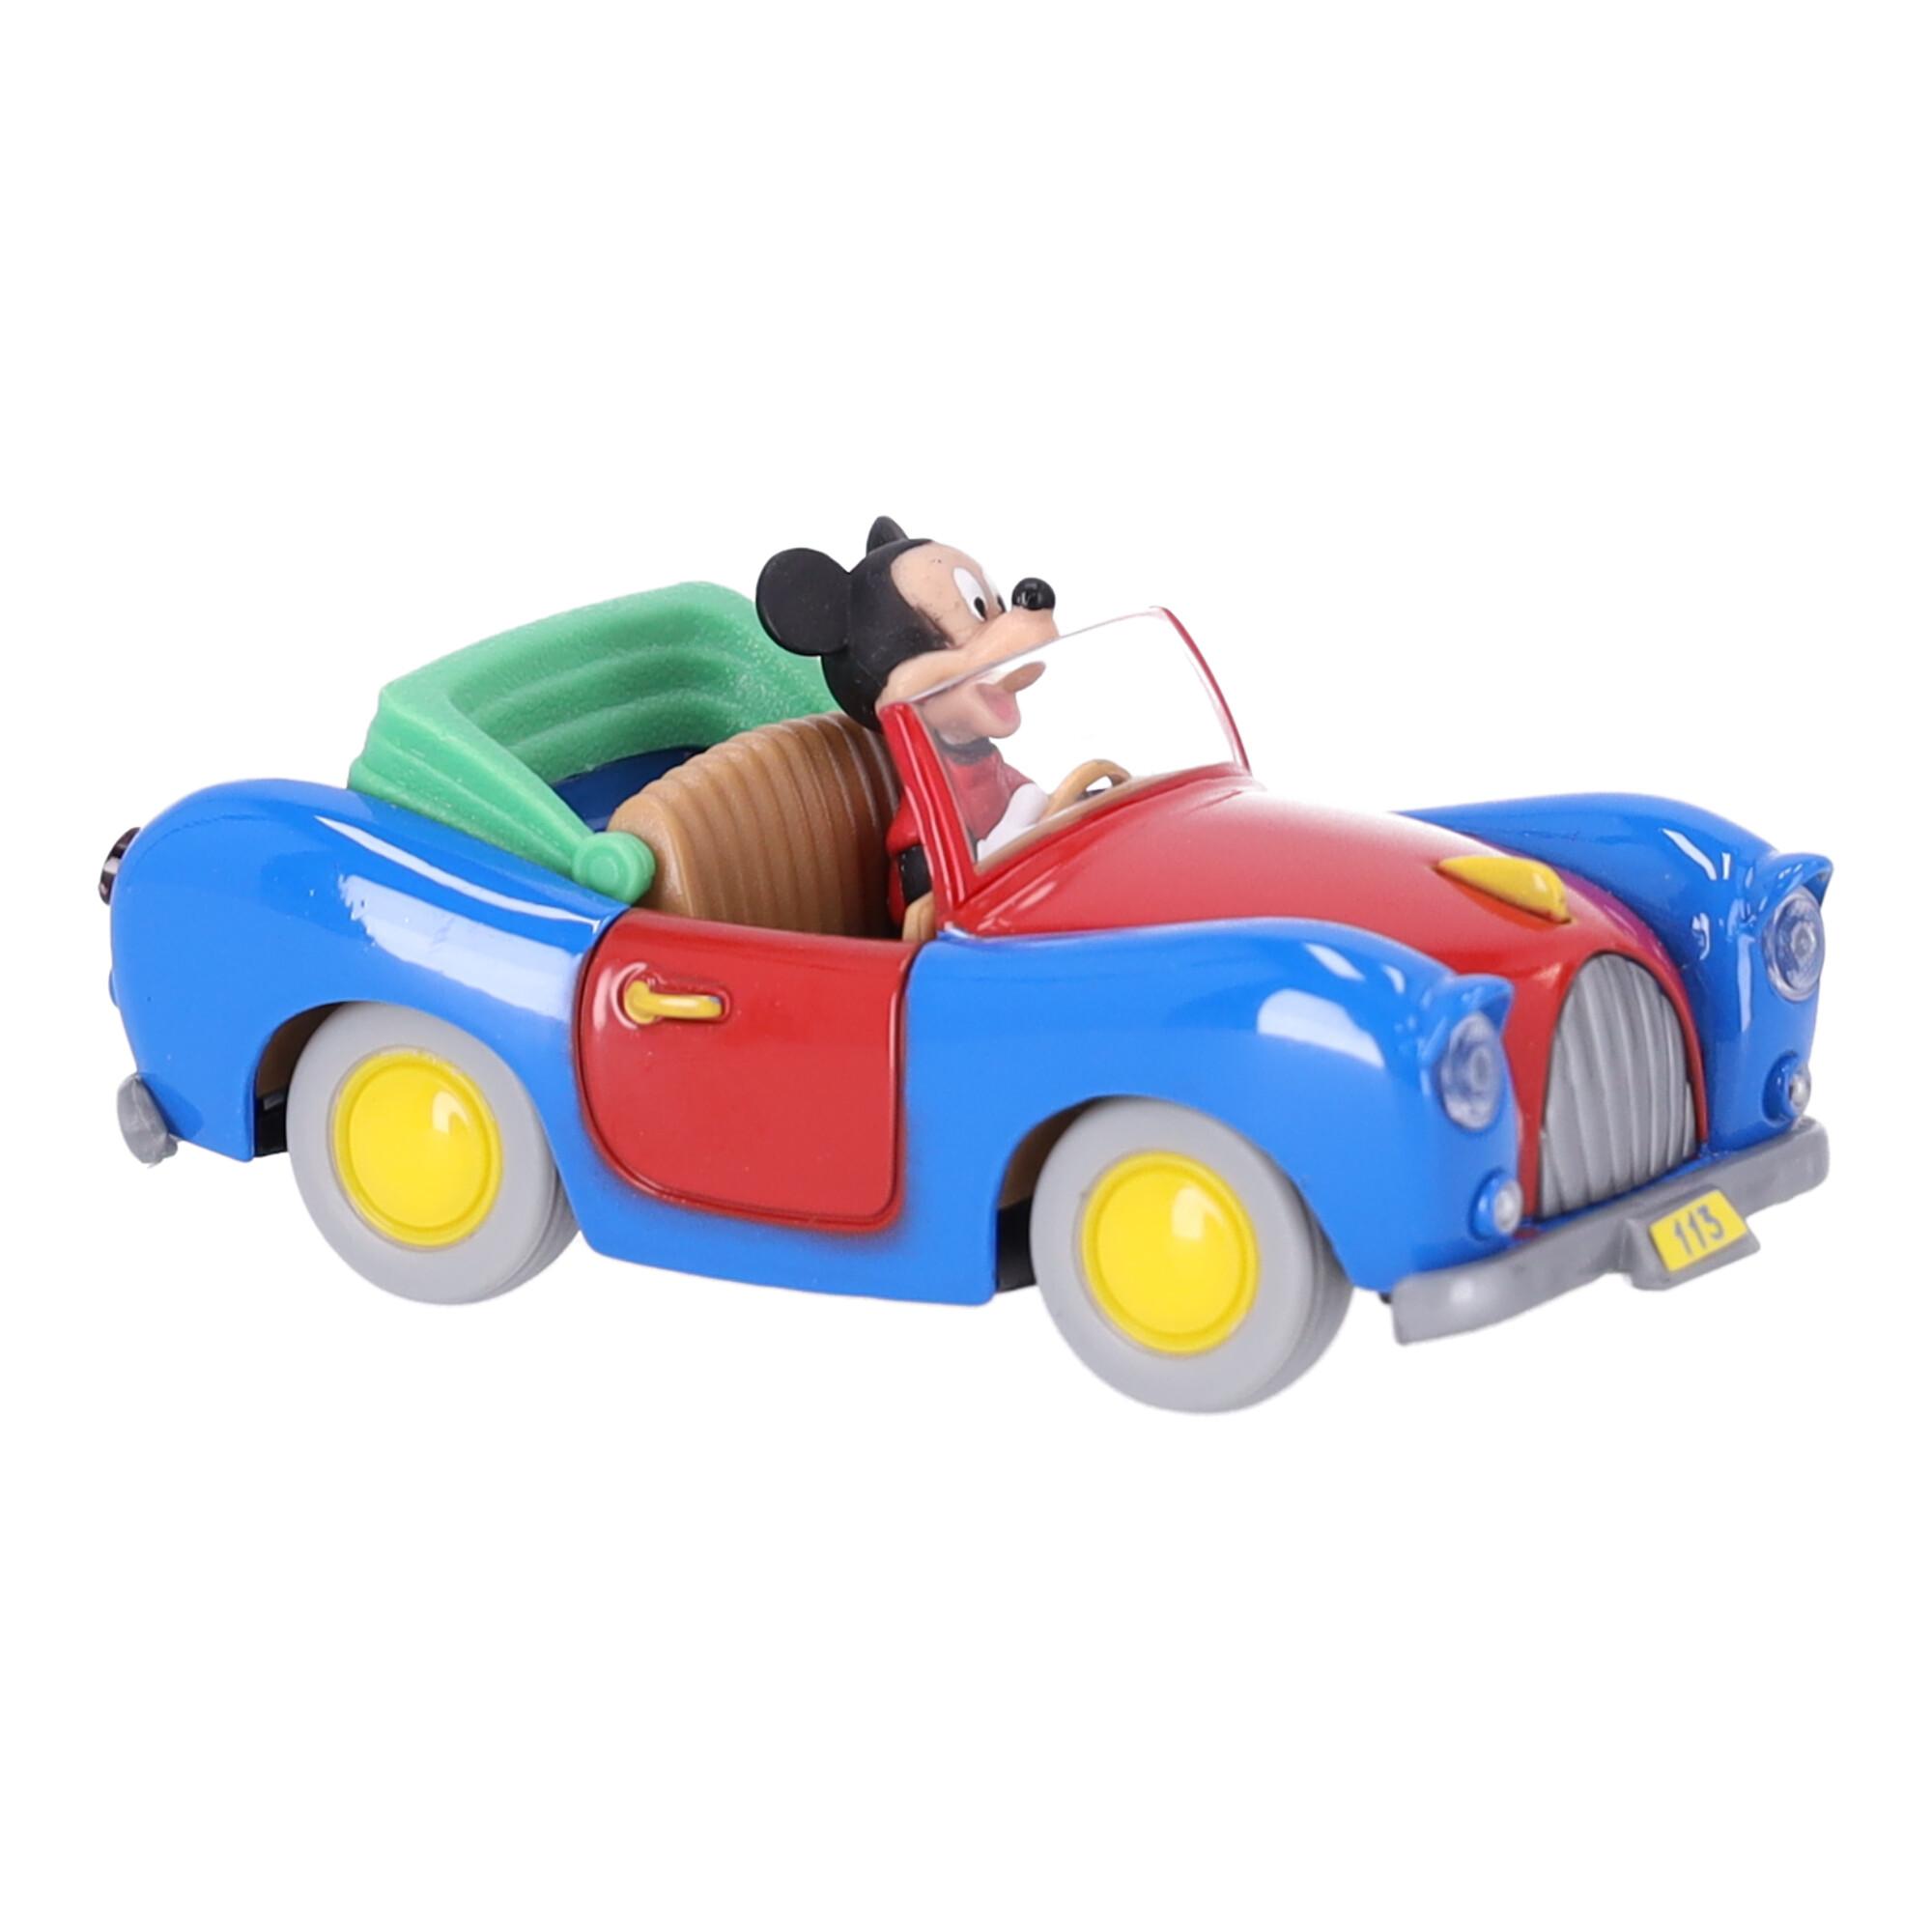 Auto Disney in 1:43 scale - Mickey